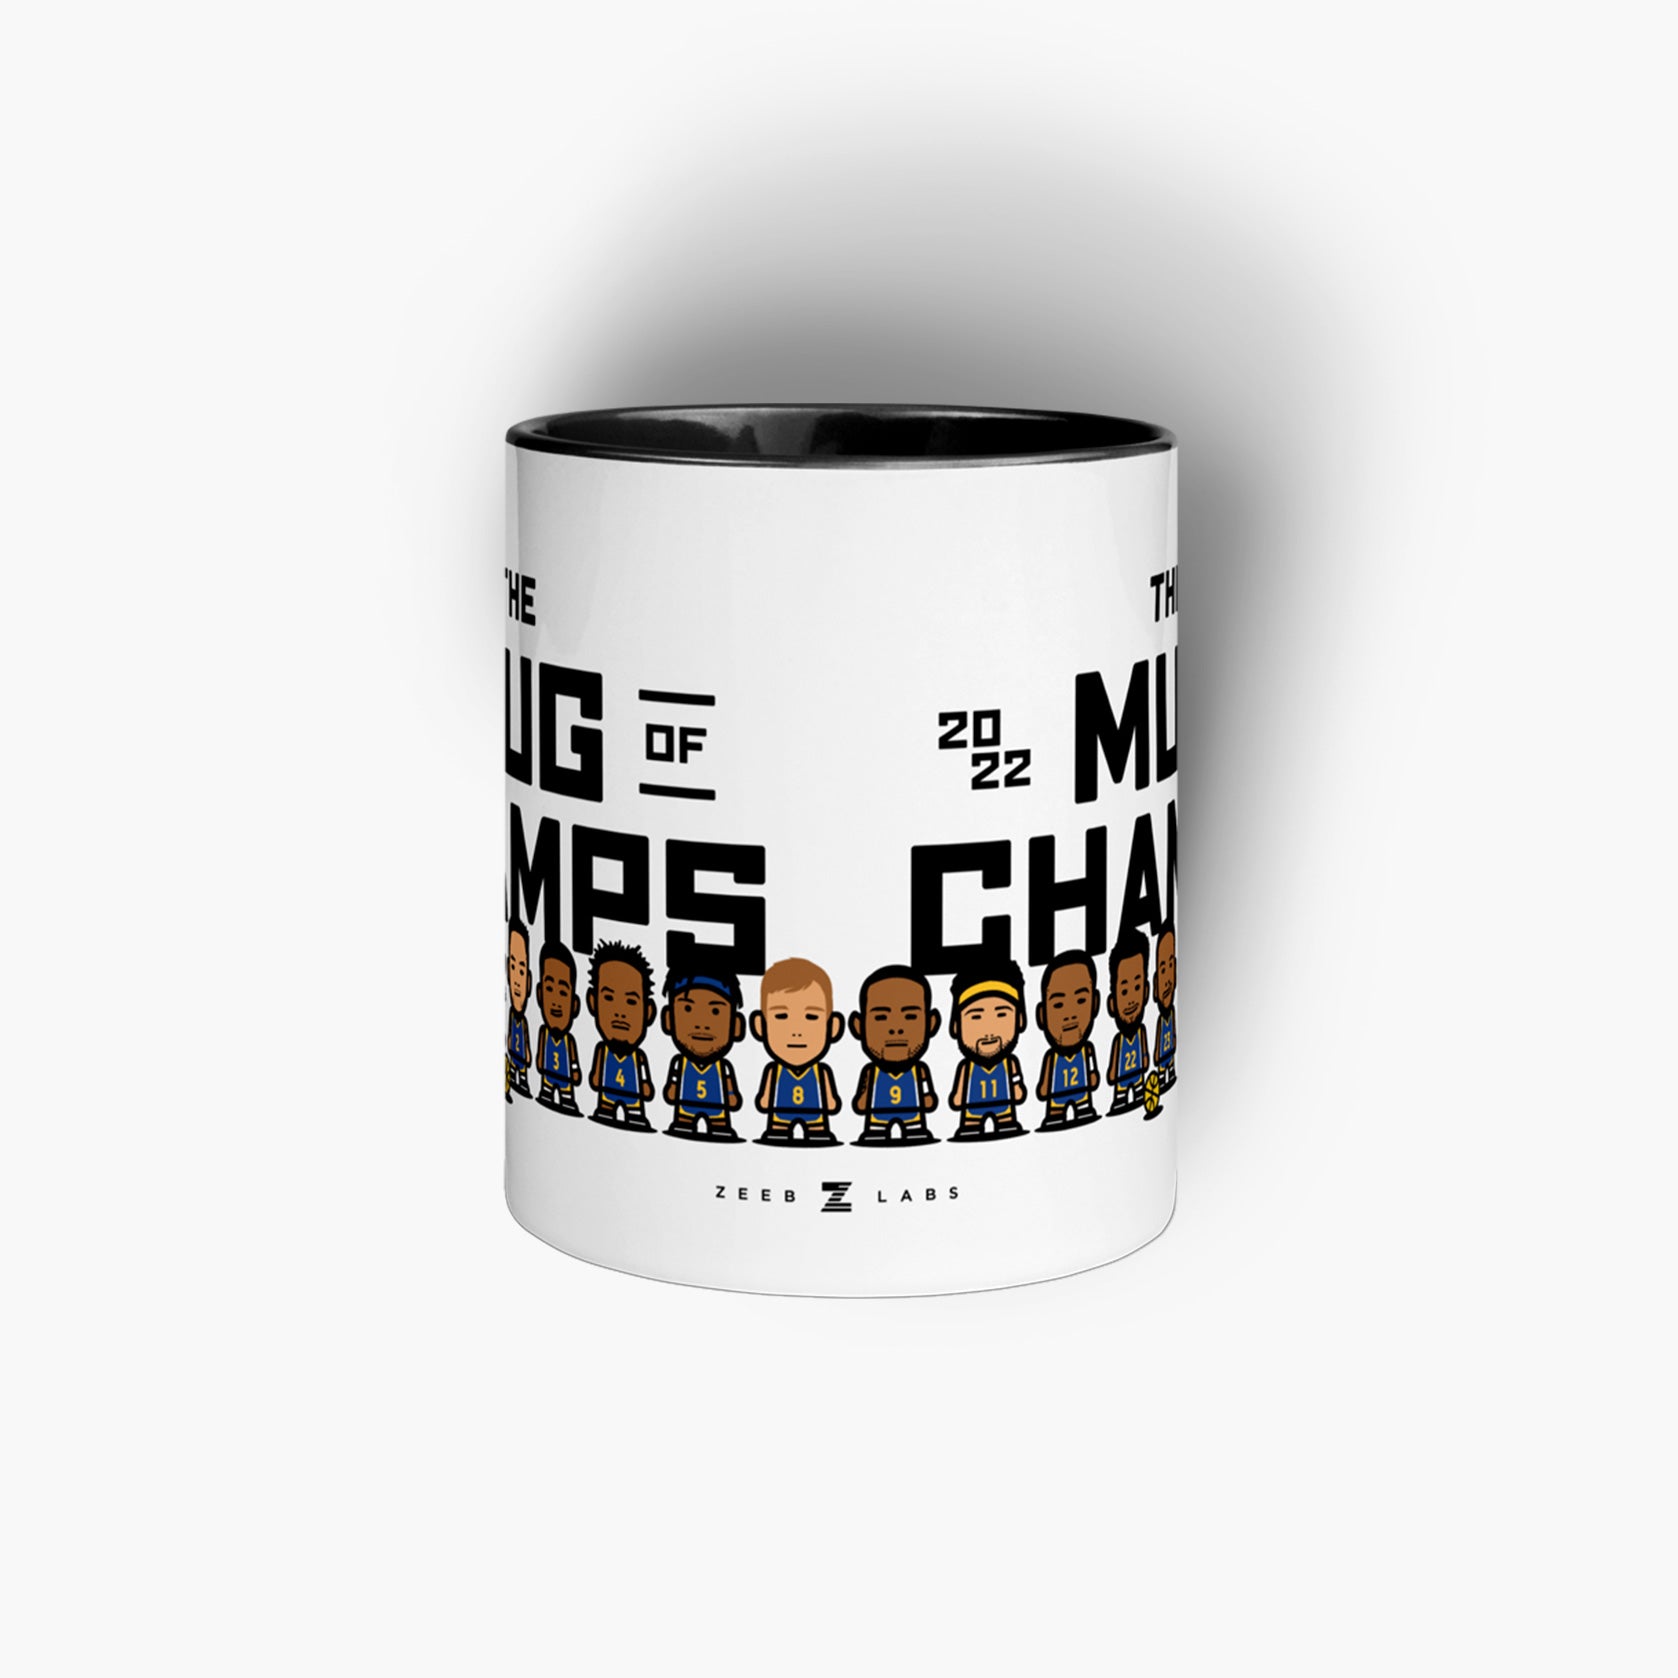 22Champs—11oz Mug—Mug of Champs